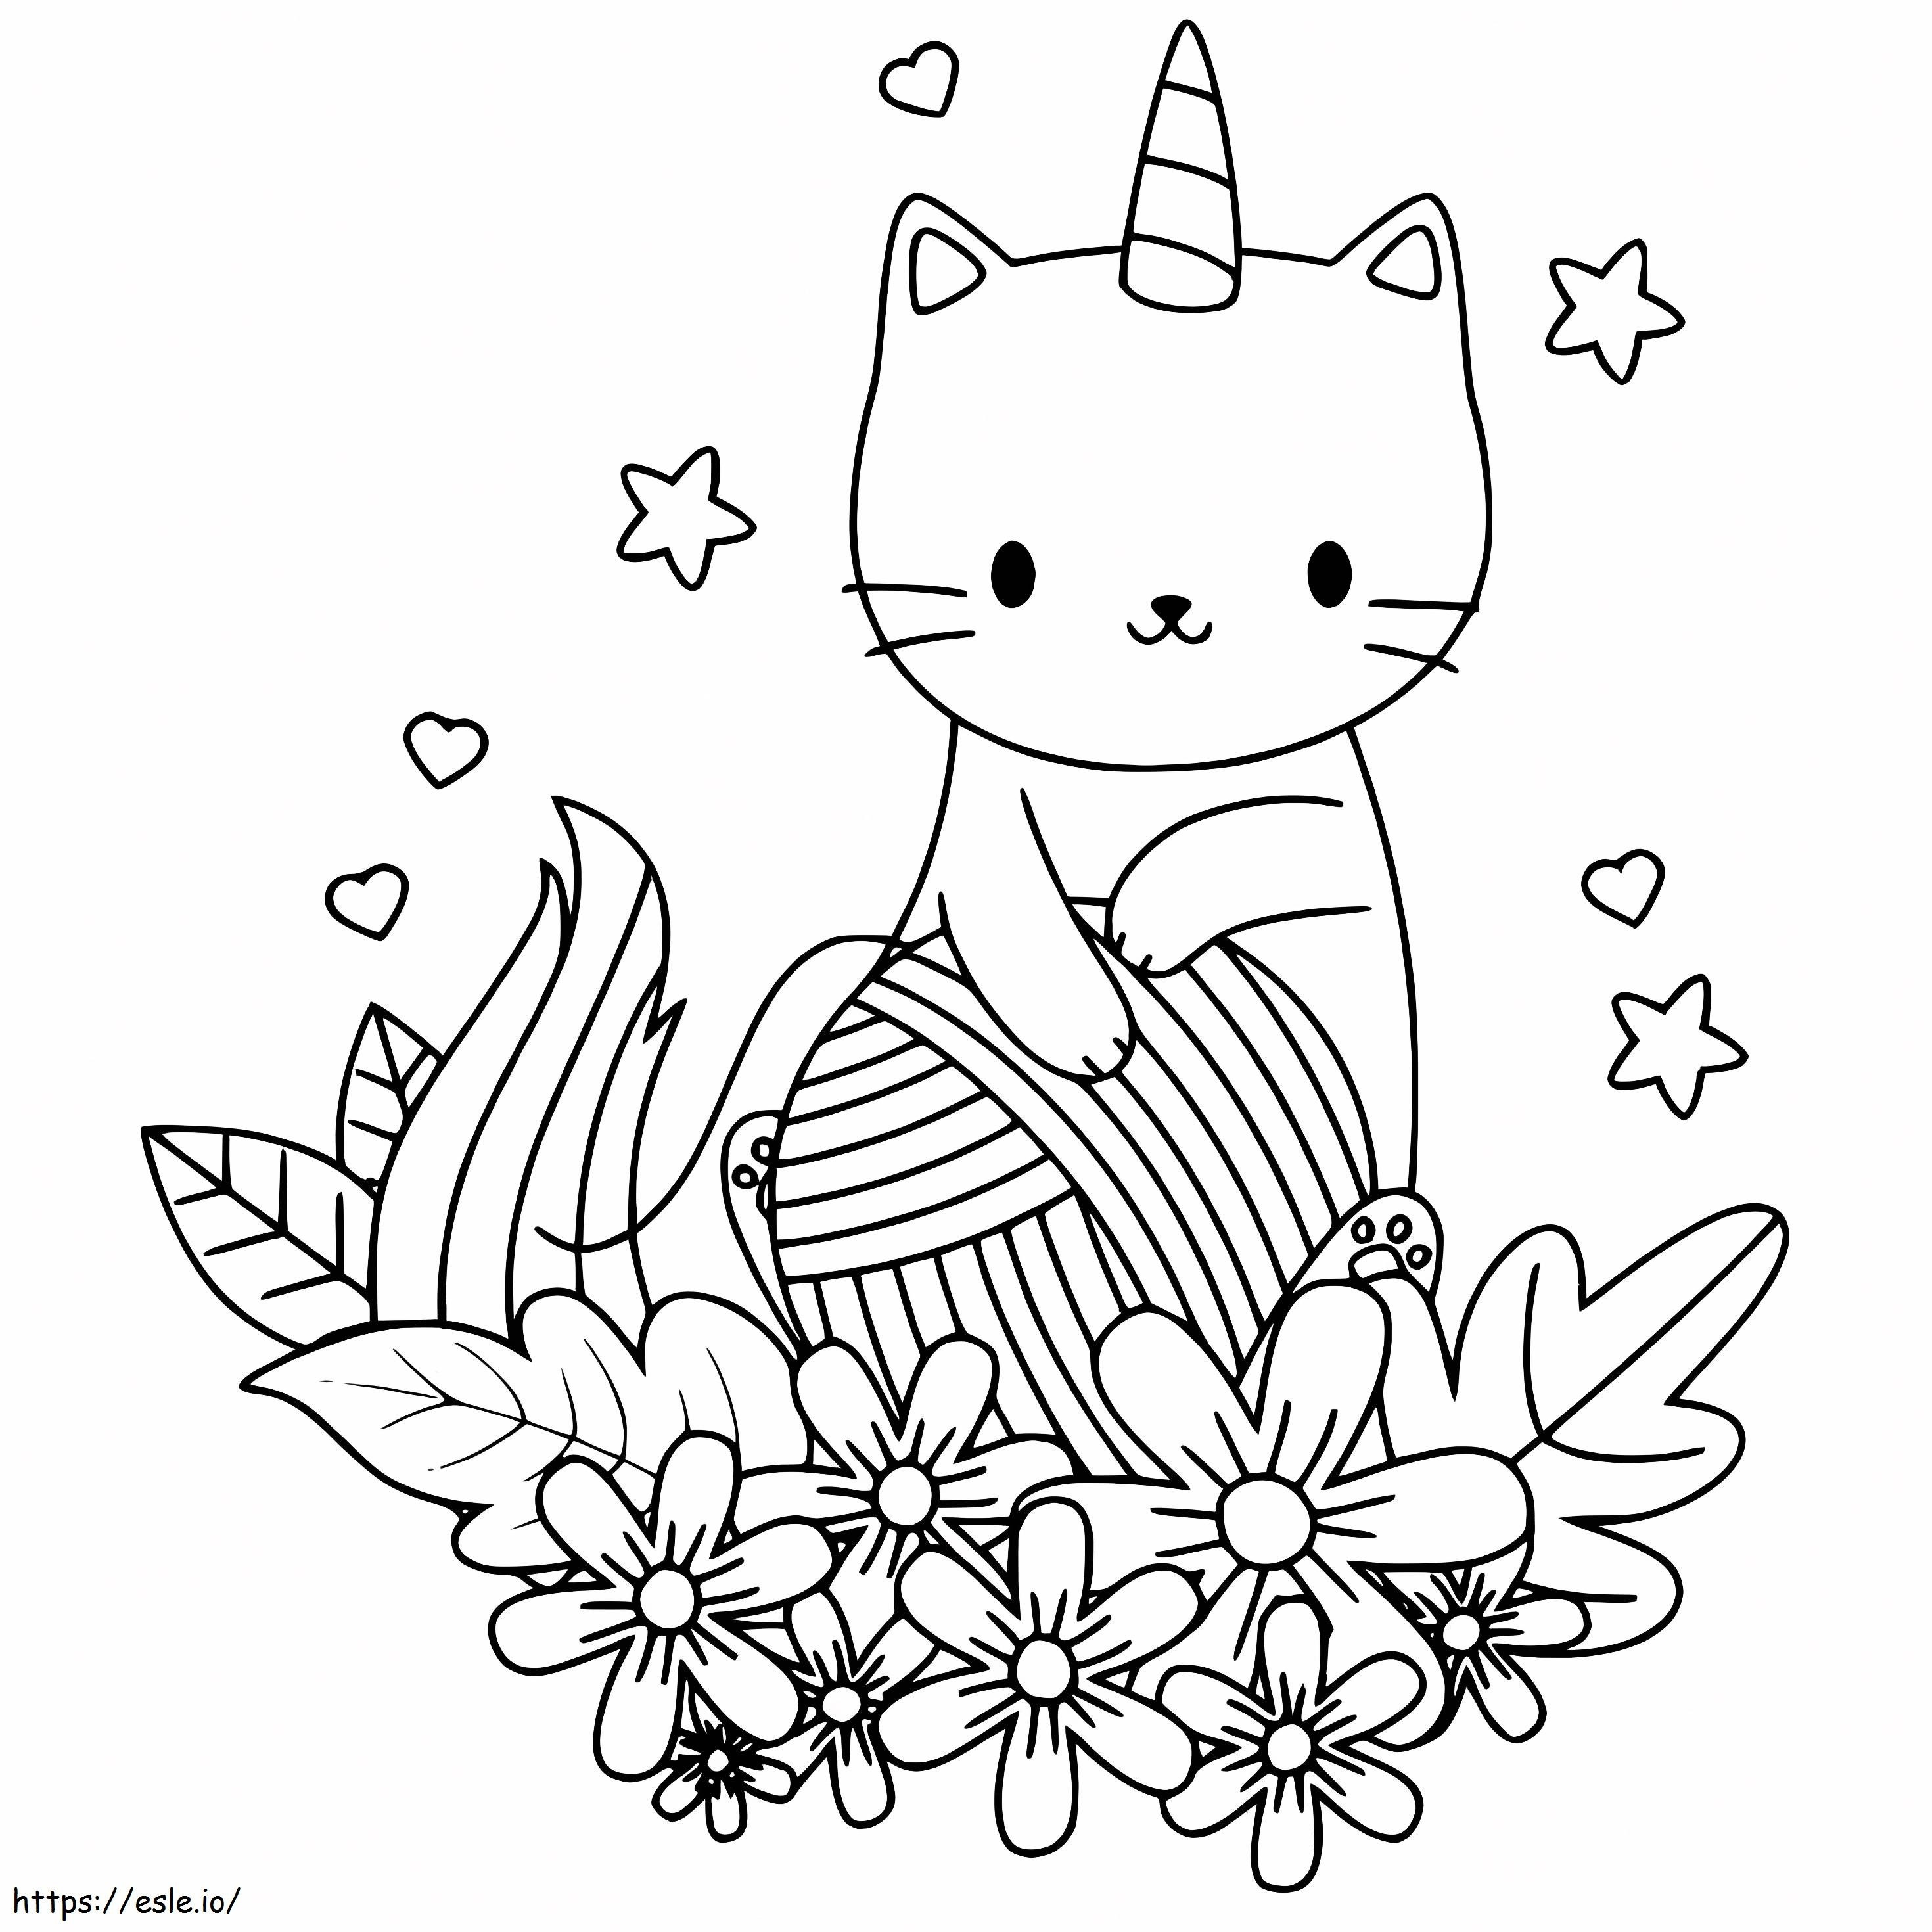 Einhornkatze mit Blumen ausmalbilder